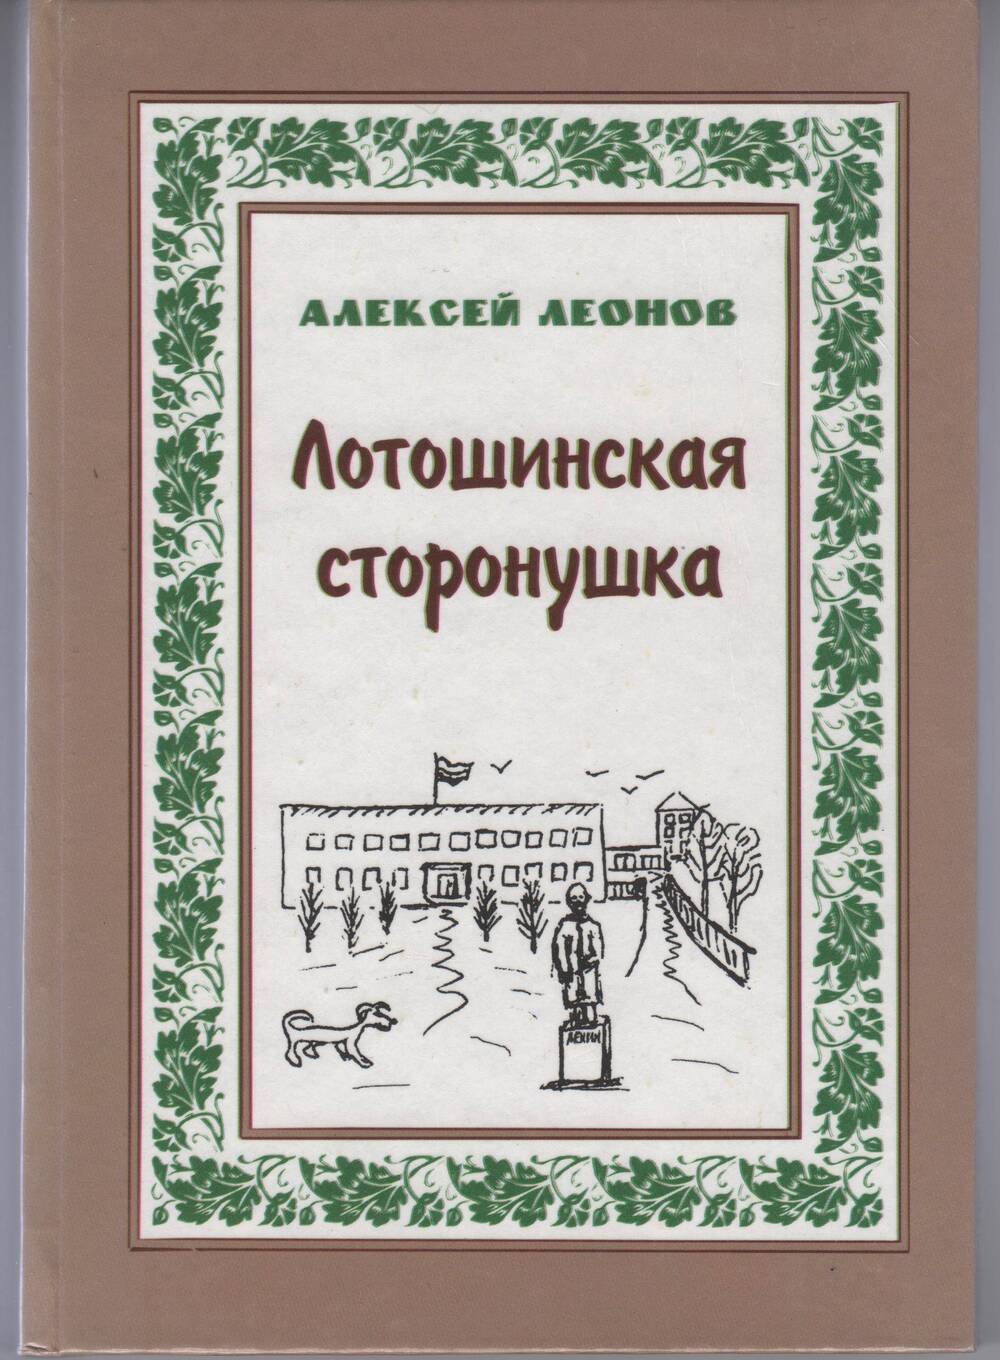 Сборник стихотворений  Лотошинская сторонушка, автор Алексей Леонов